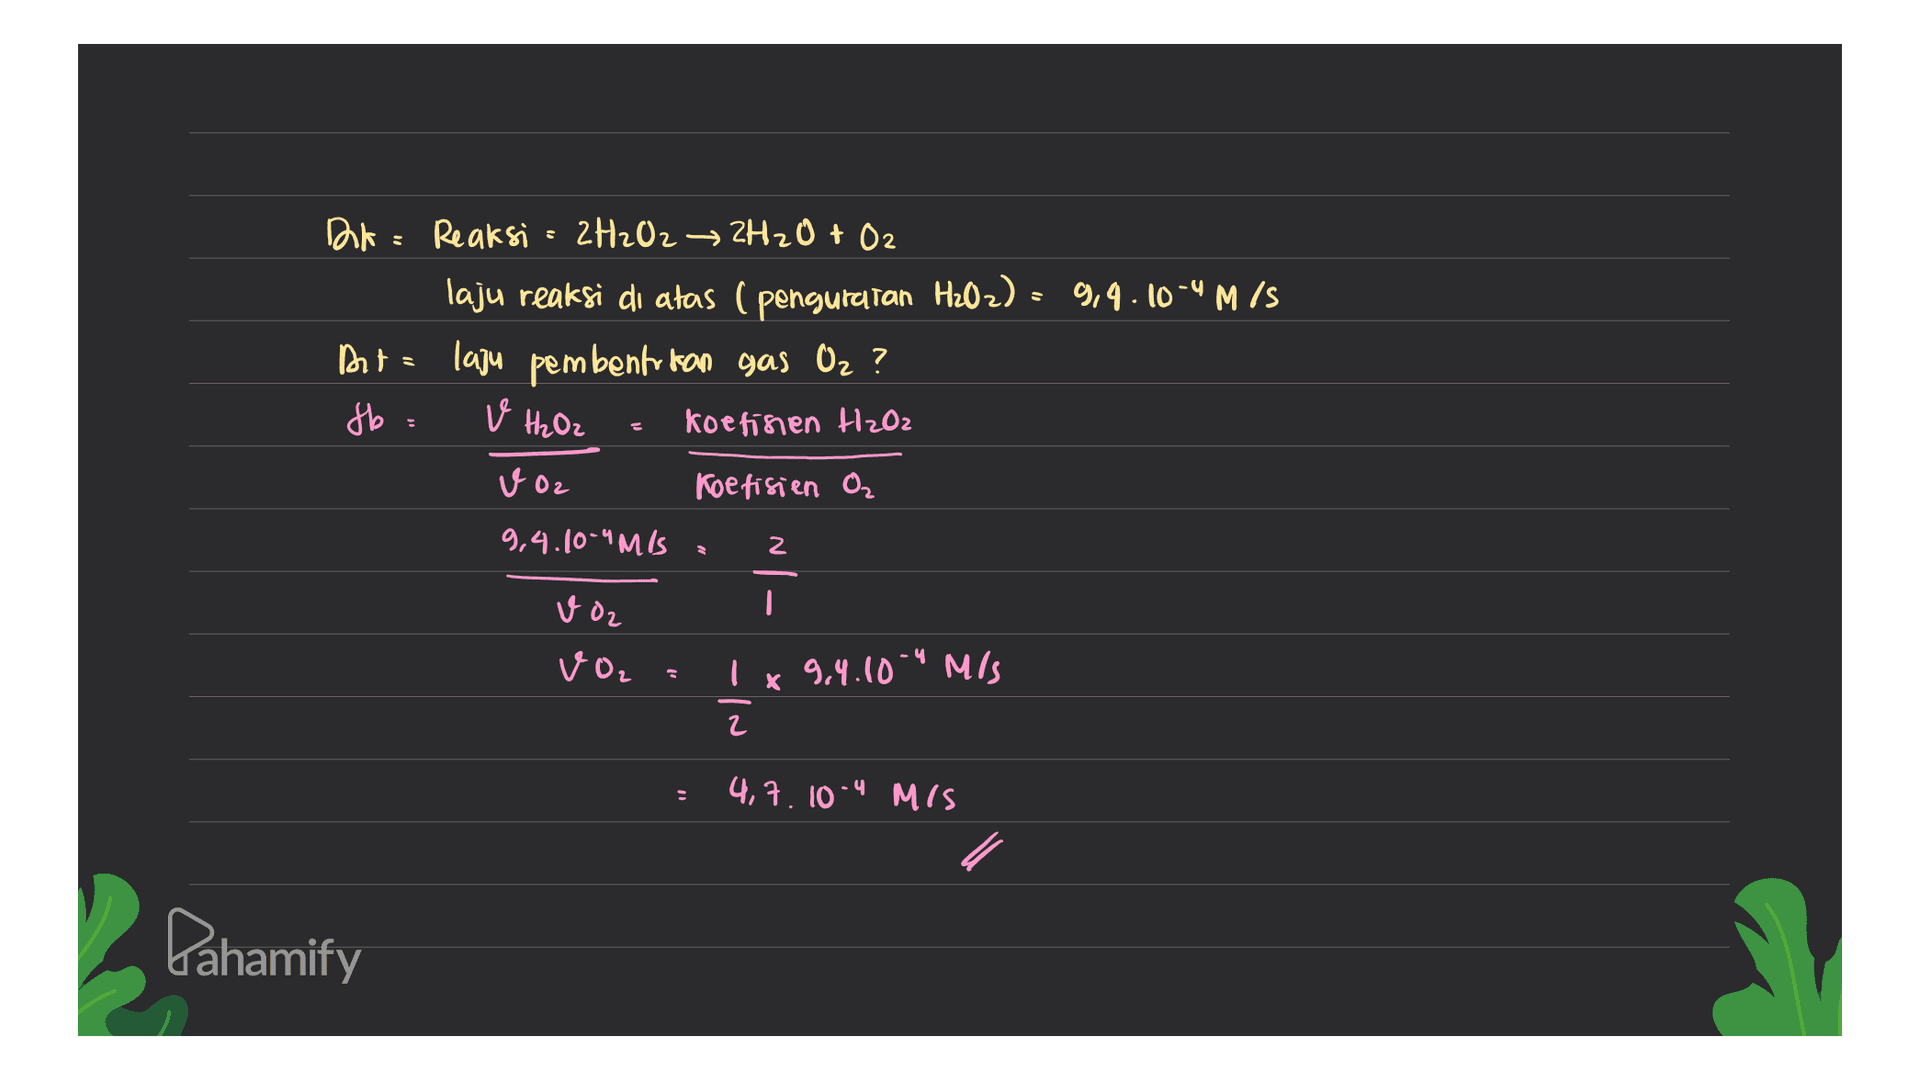 Dk = Reaksi = 2H2O2 → 2H2O + O2 laju reaksi di atas (penguratan H2O2) = 9,4.10-4 M/S Dute laju pembentrikan gas Oz ? fb: koefisien H2O2 v H₂ Oz voz Koefisien o, 9,4.10-"MIS 2 voz I VOL I x 9.4.10-4 m/s 2 4,7.10-4 MIS Pahamify 